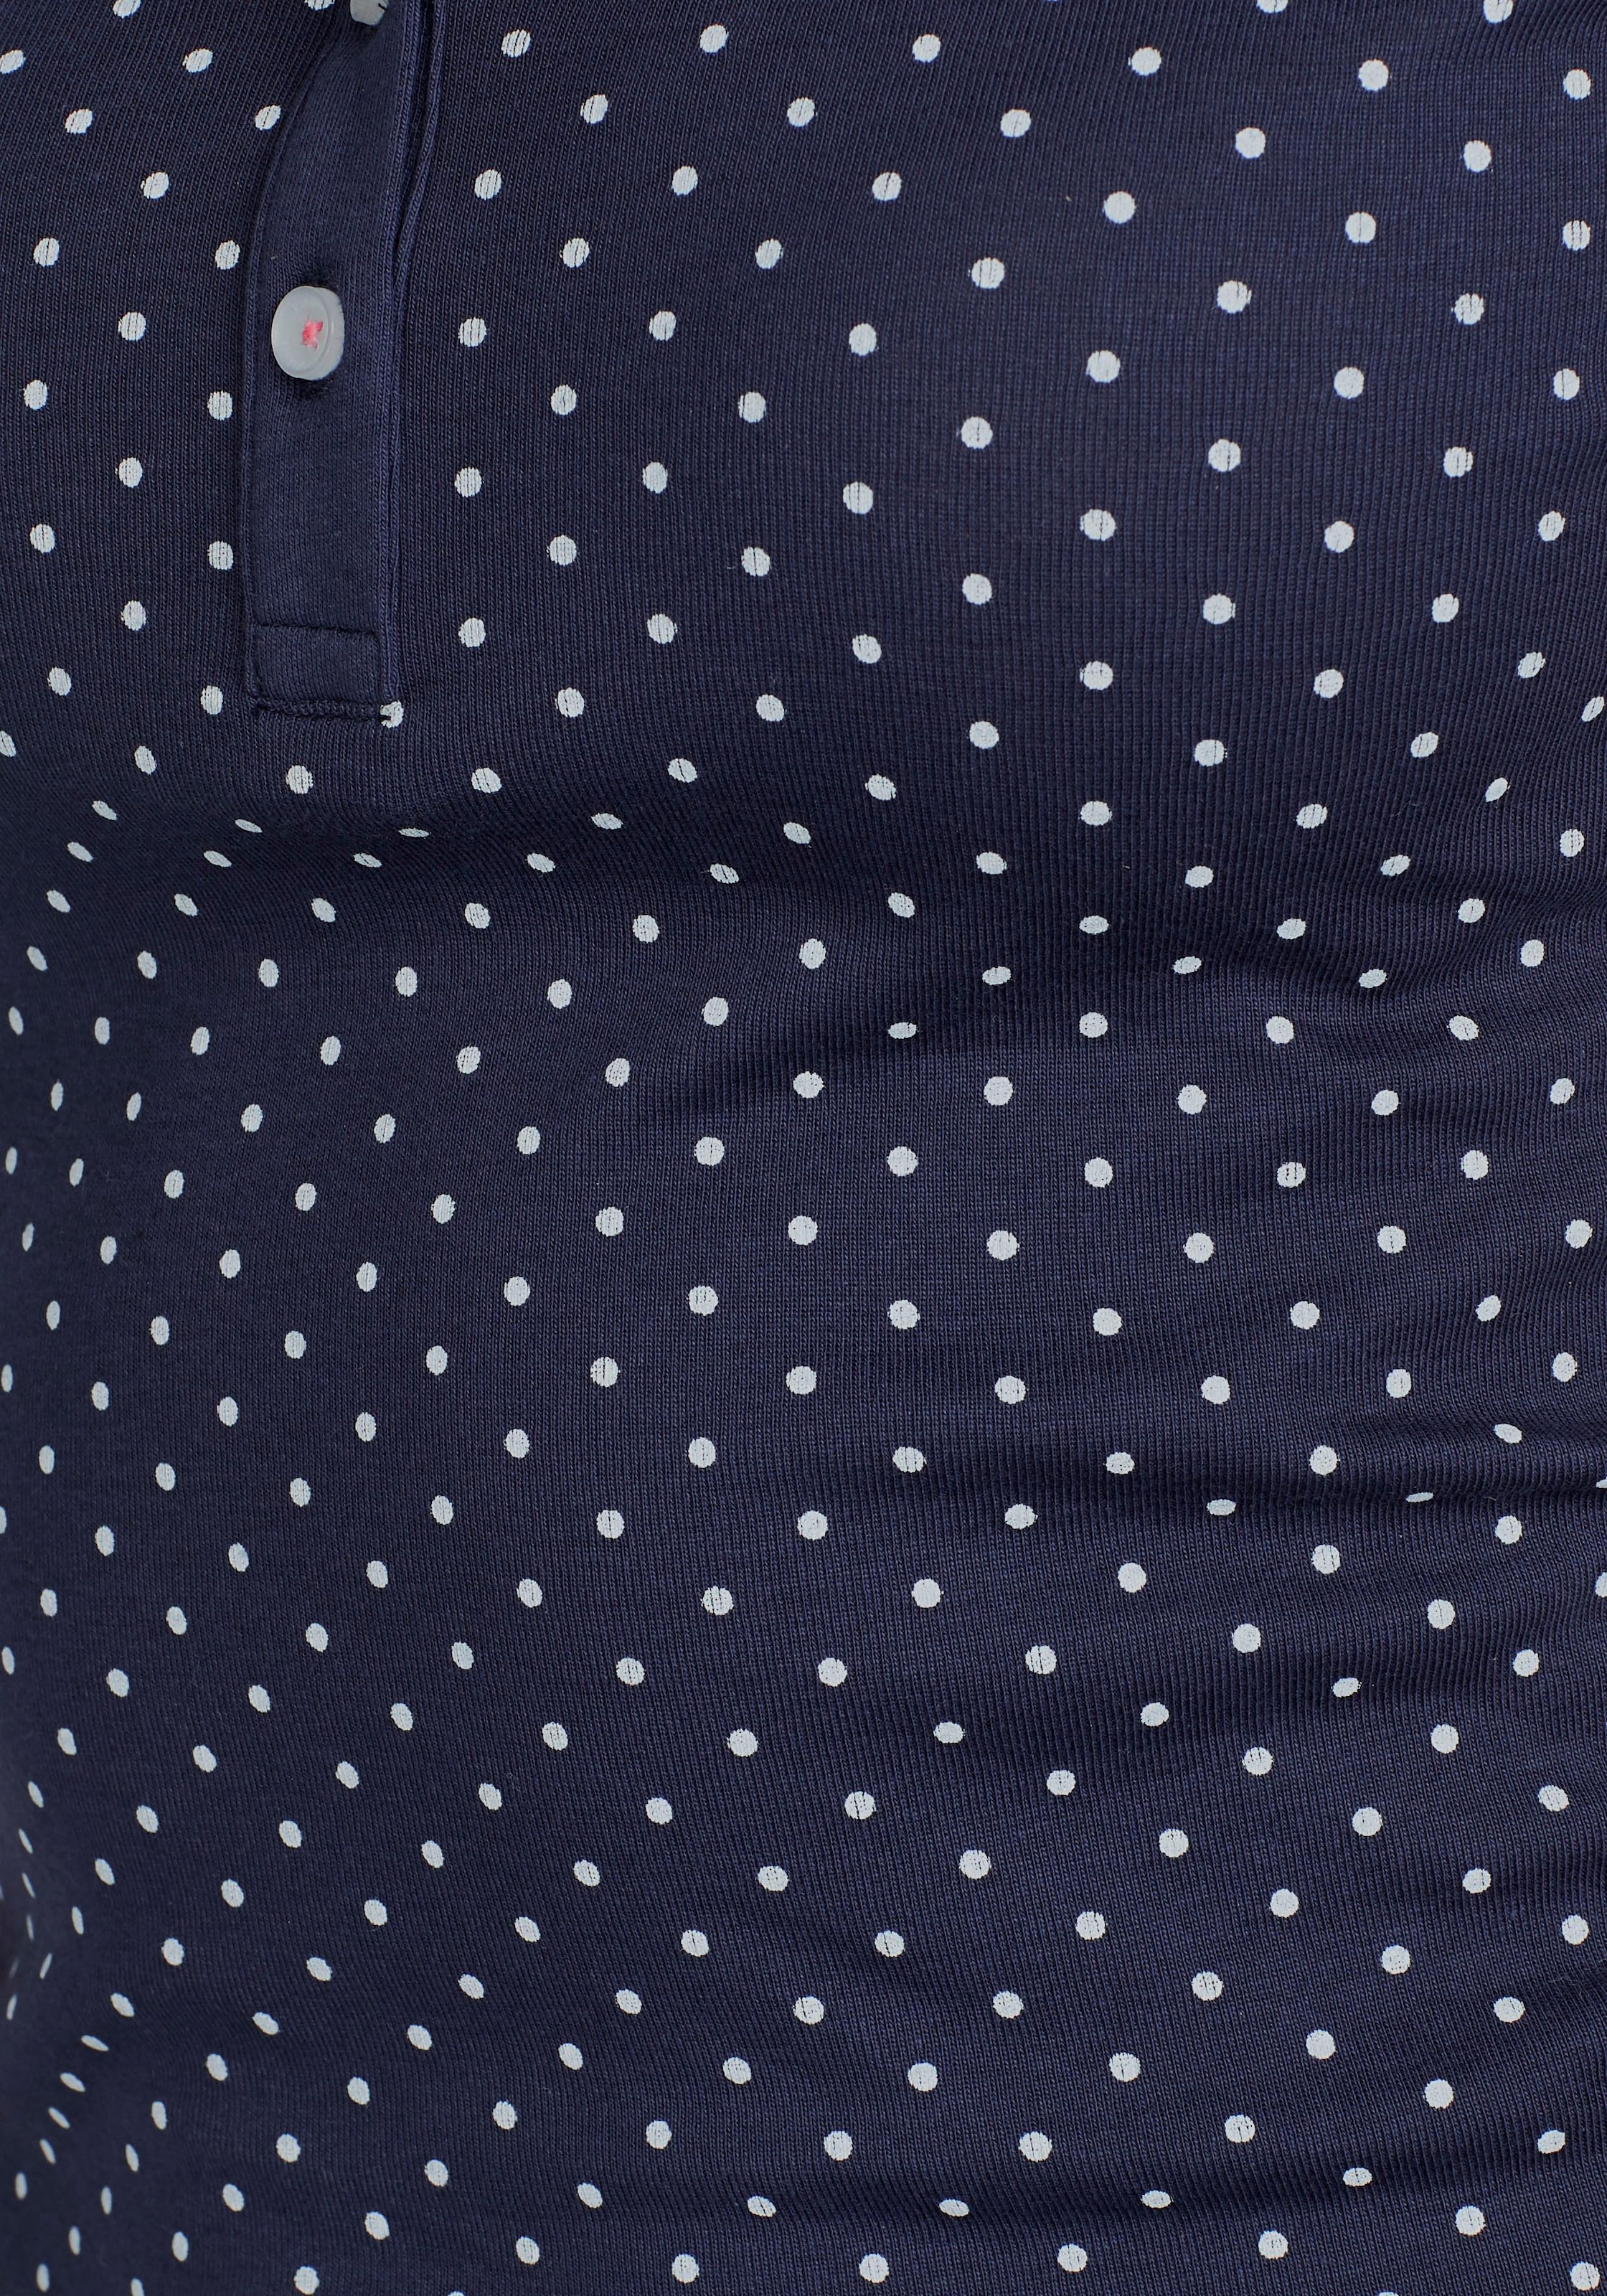 KangaROOS Poloshirt, im Online-Shop kaufen tollen Pünktchen-Muster im